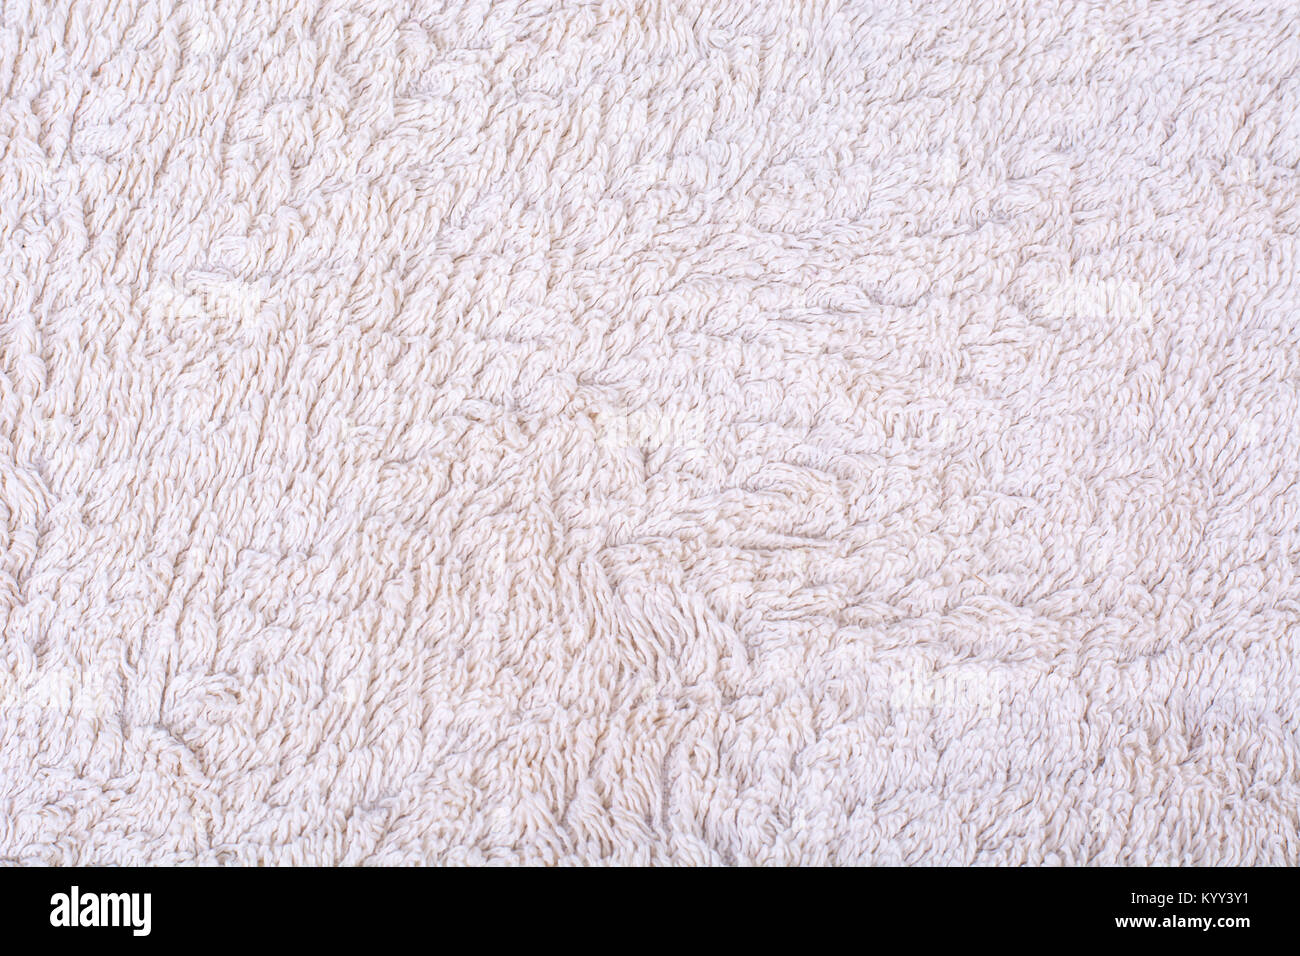 Texture of terry cloth. Studio Photo Stock Photo